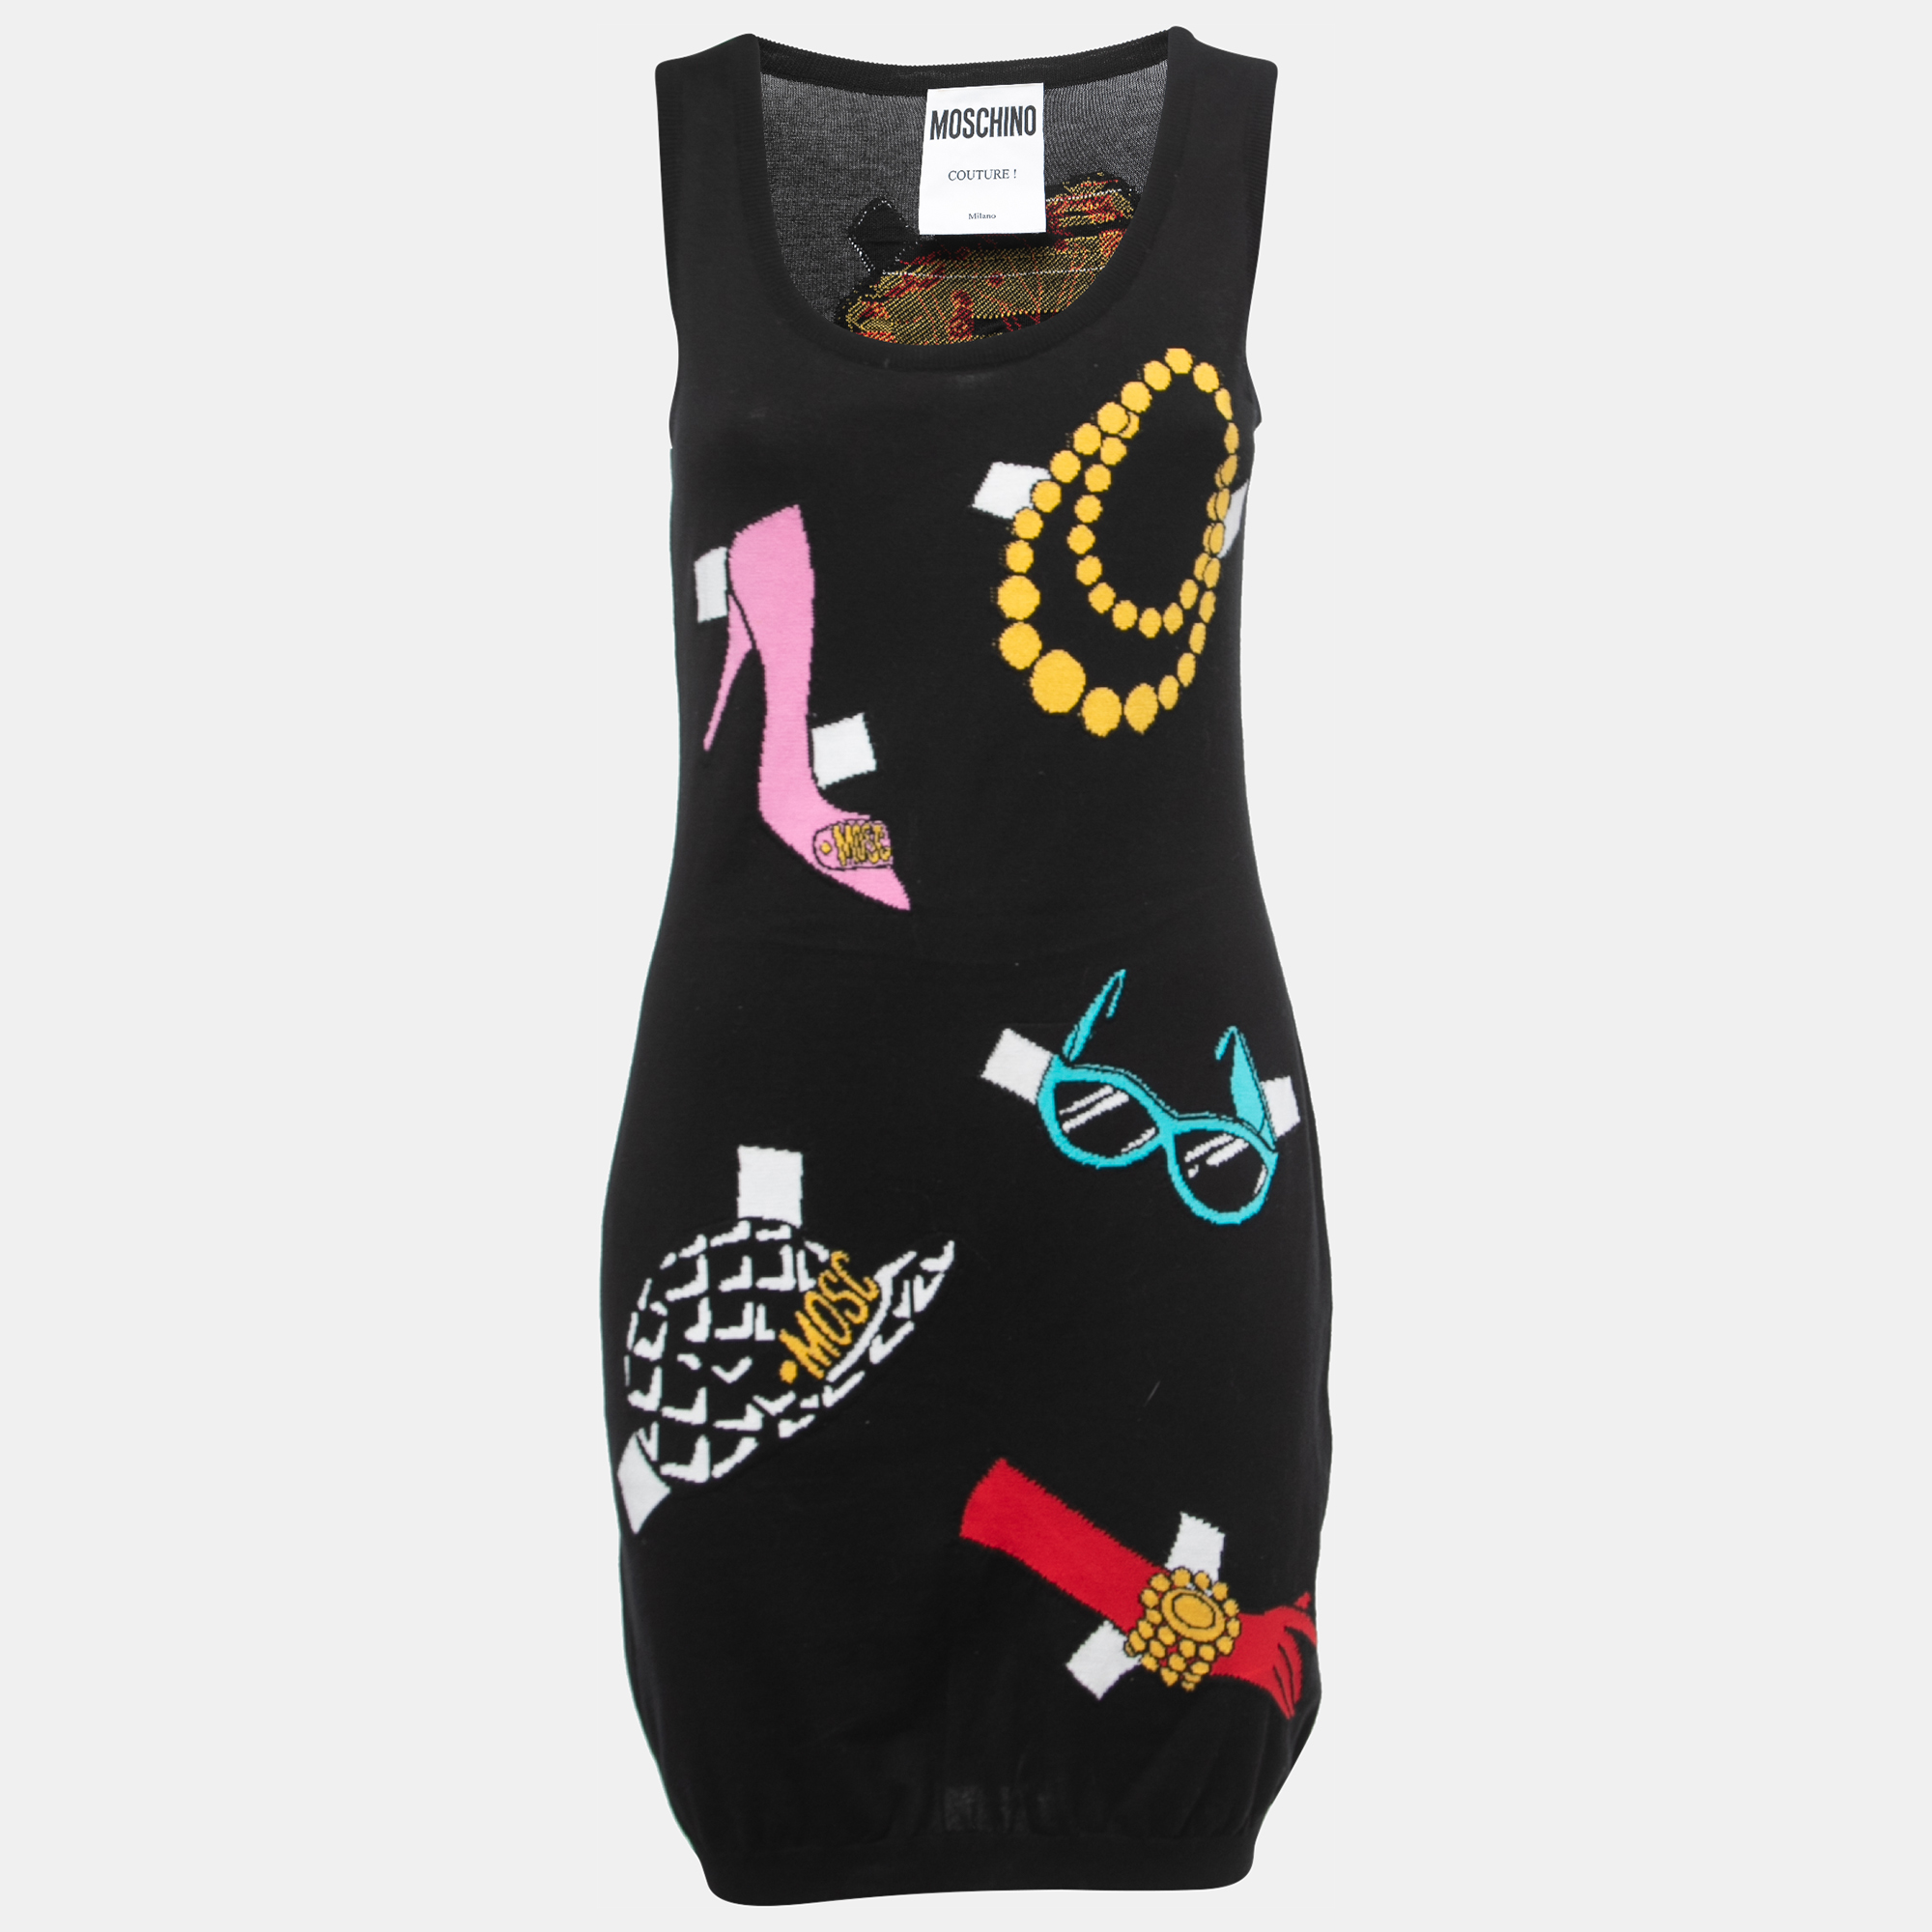 Moschino Couture Black Fashion Patterned Knit Sleeveless Mini Dress M